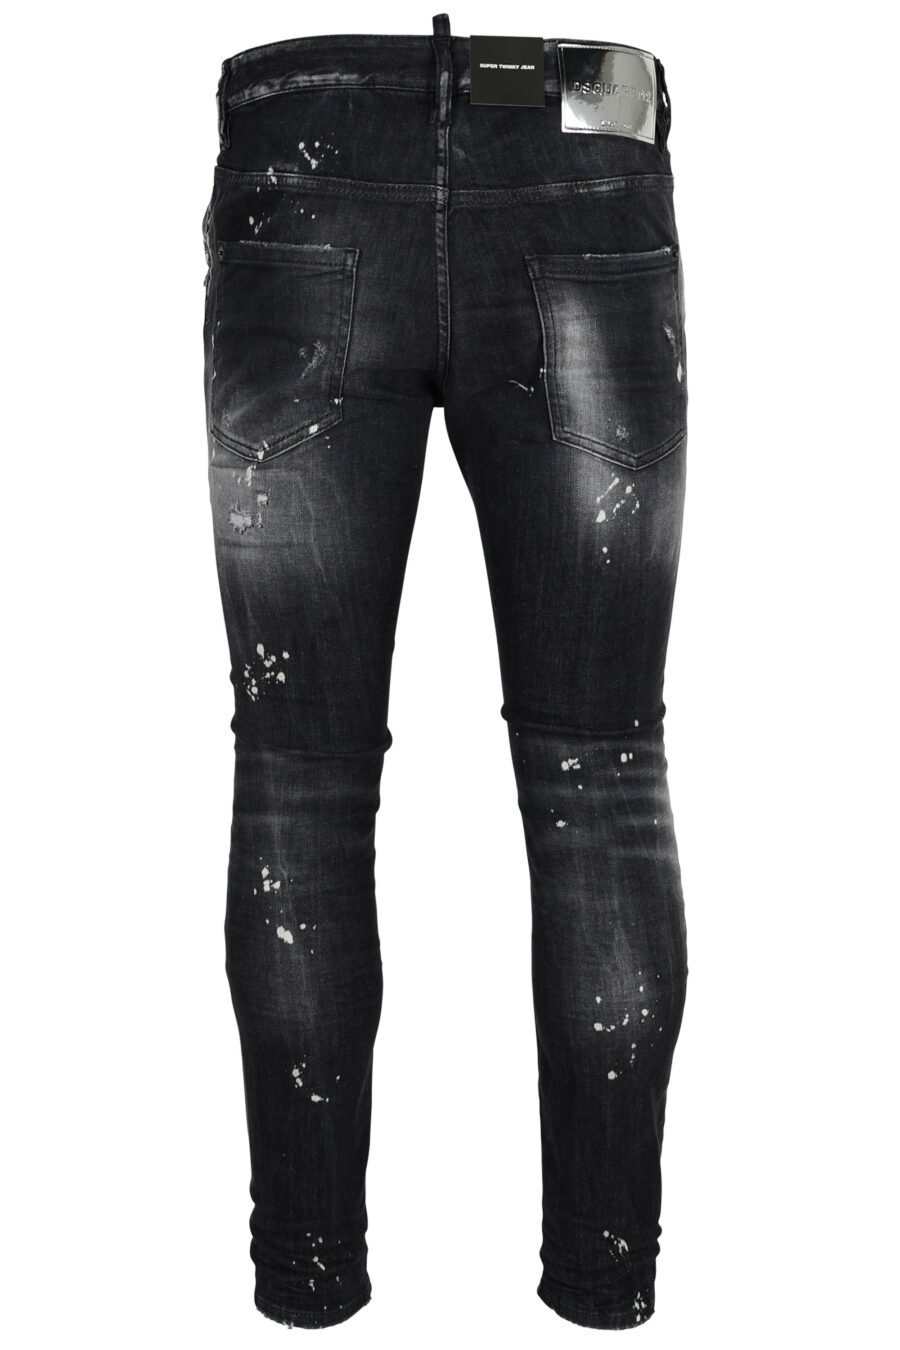 Pantalón vaquero negro "super twinky jean" con rotos y semidesgastado - 8054148473945 2